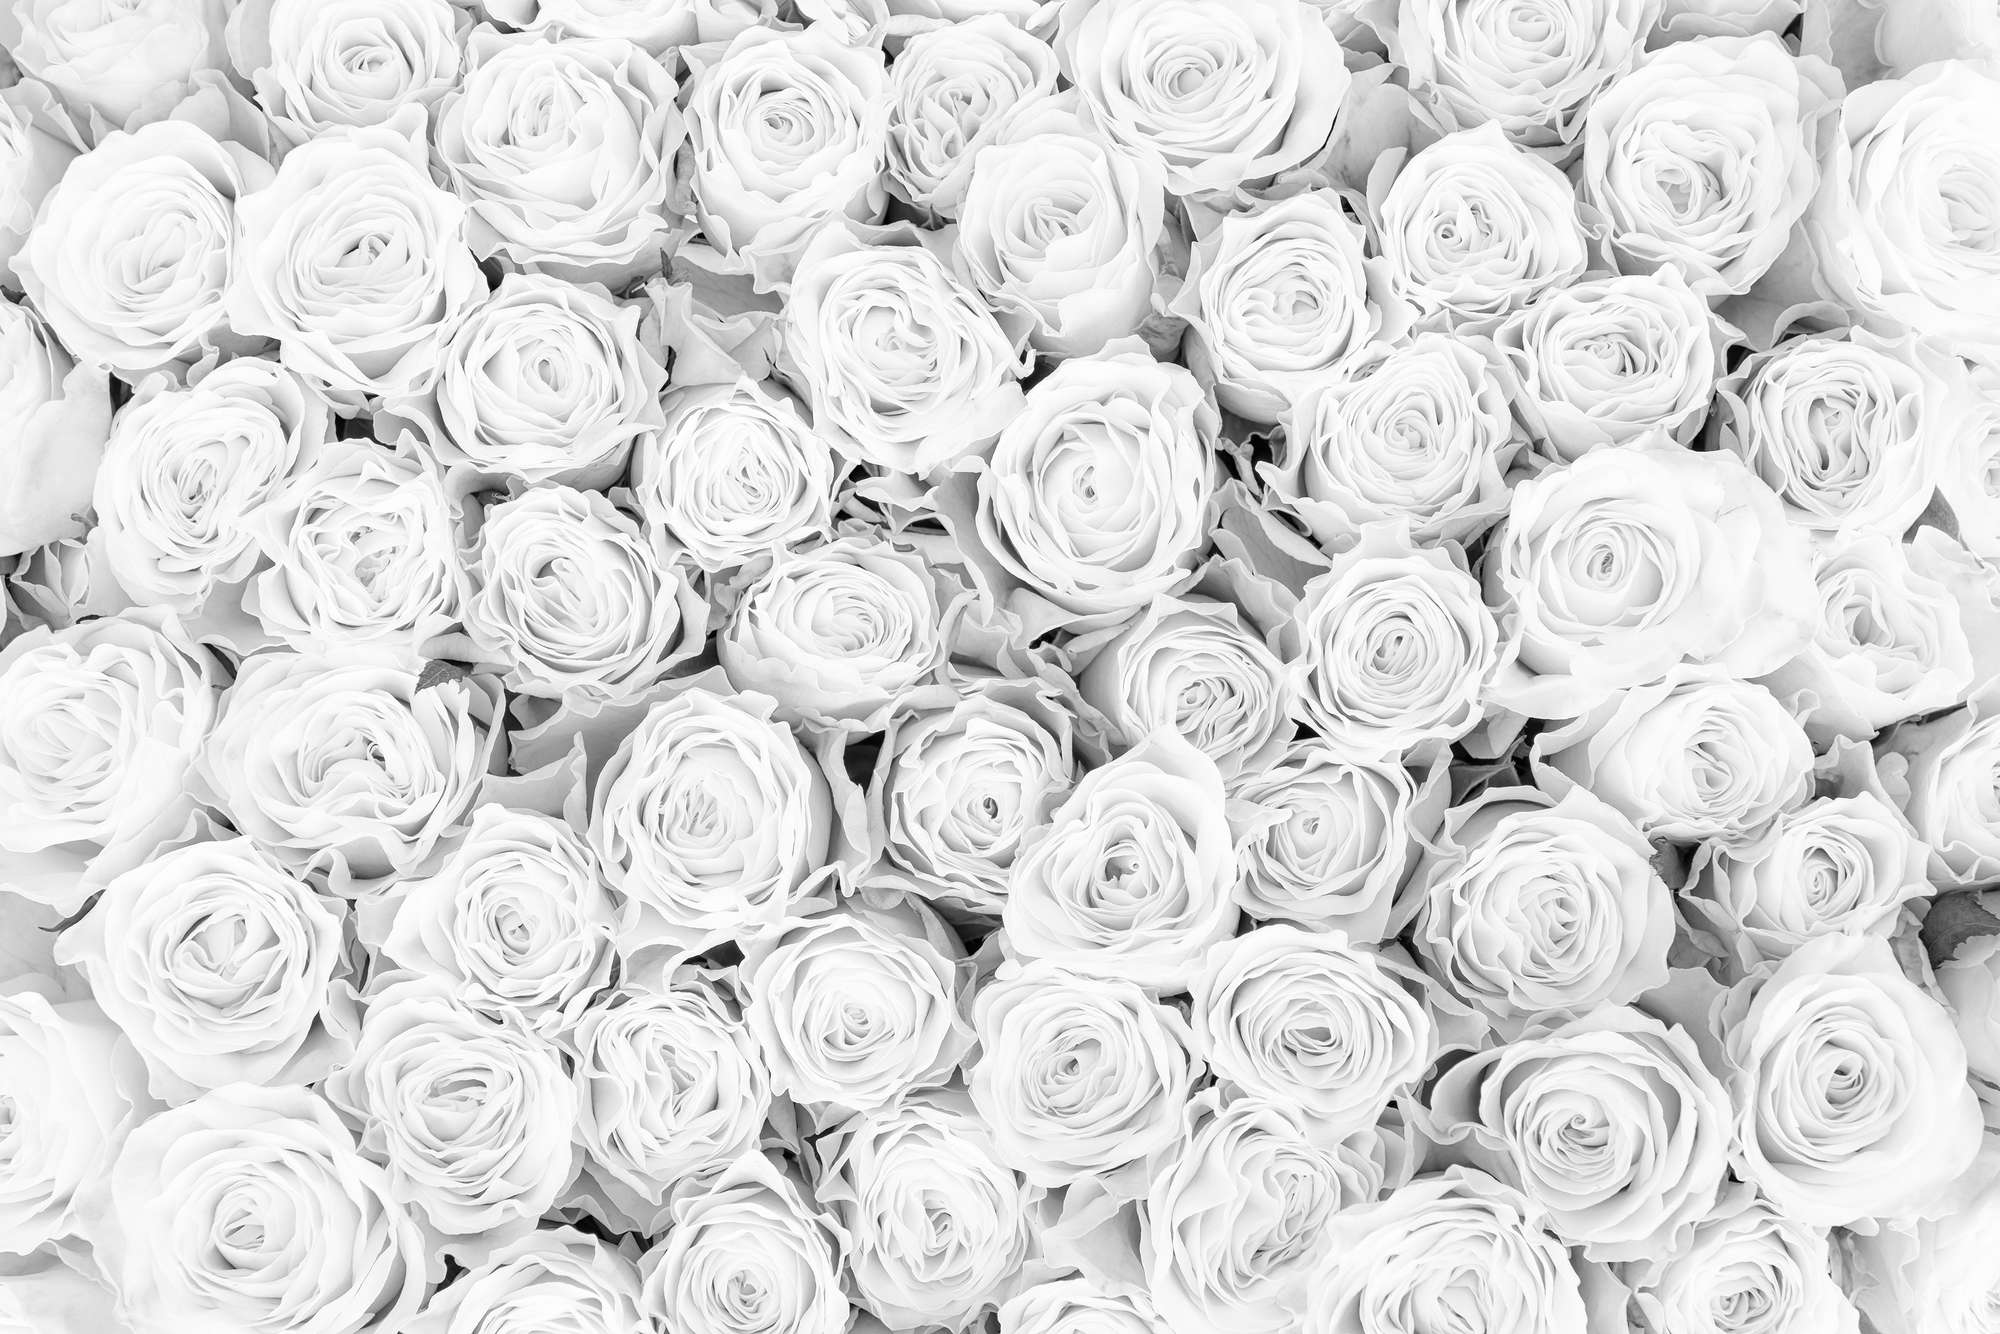             Papier peint végétal Roses blanches sur intissé structuré
        